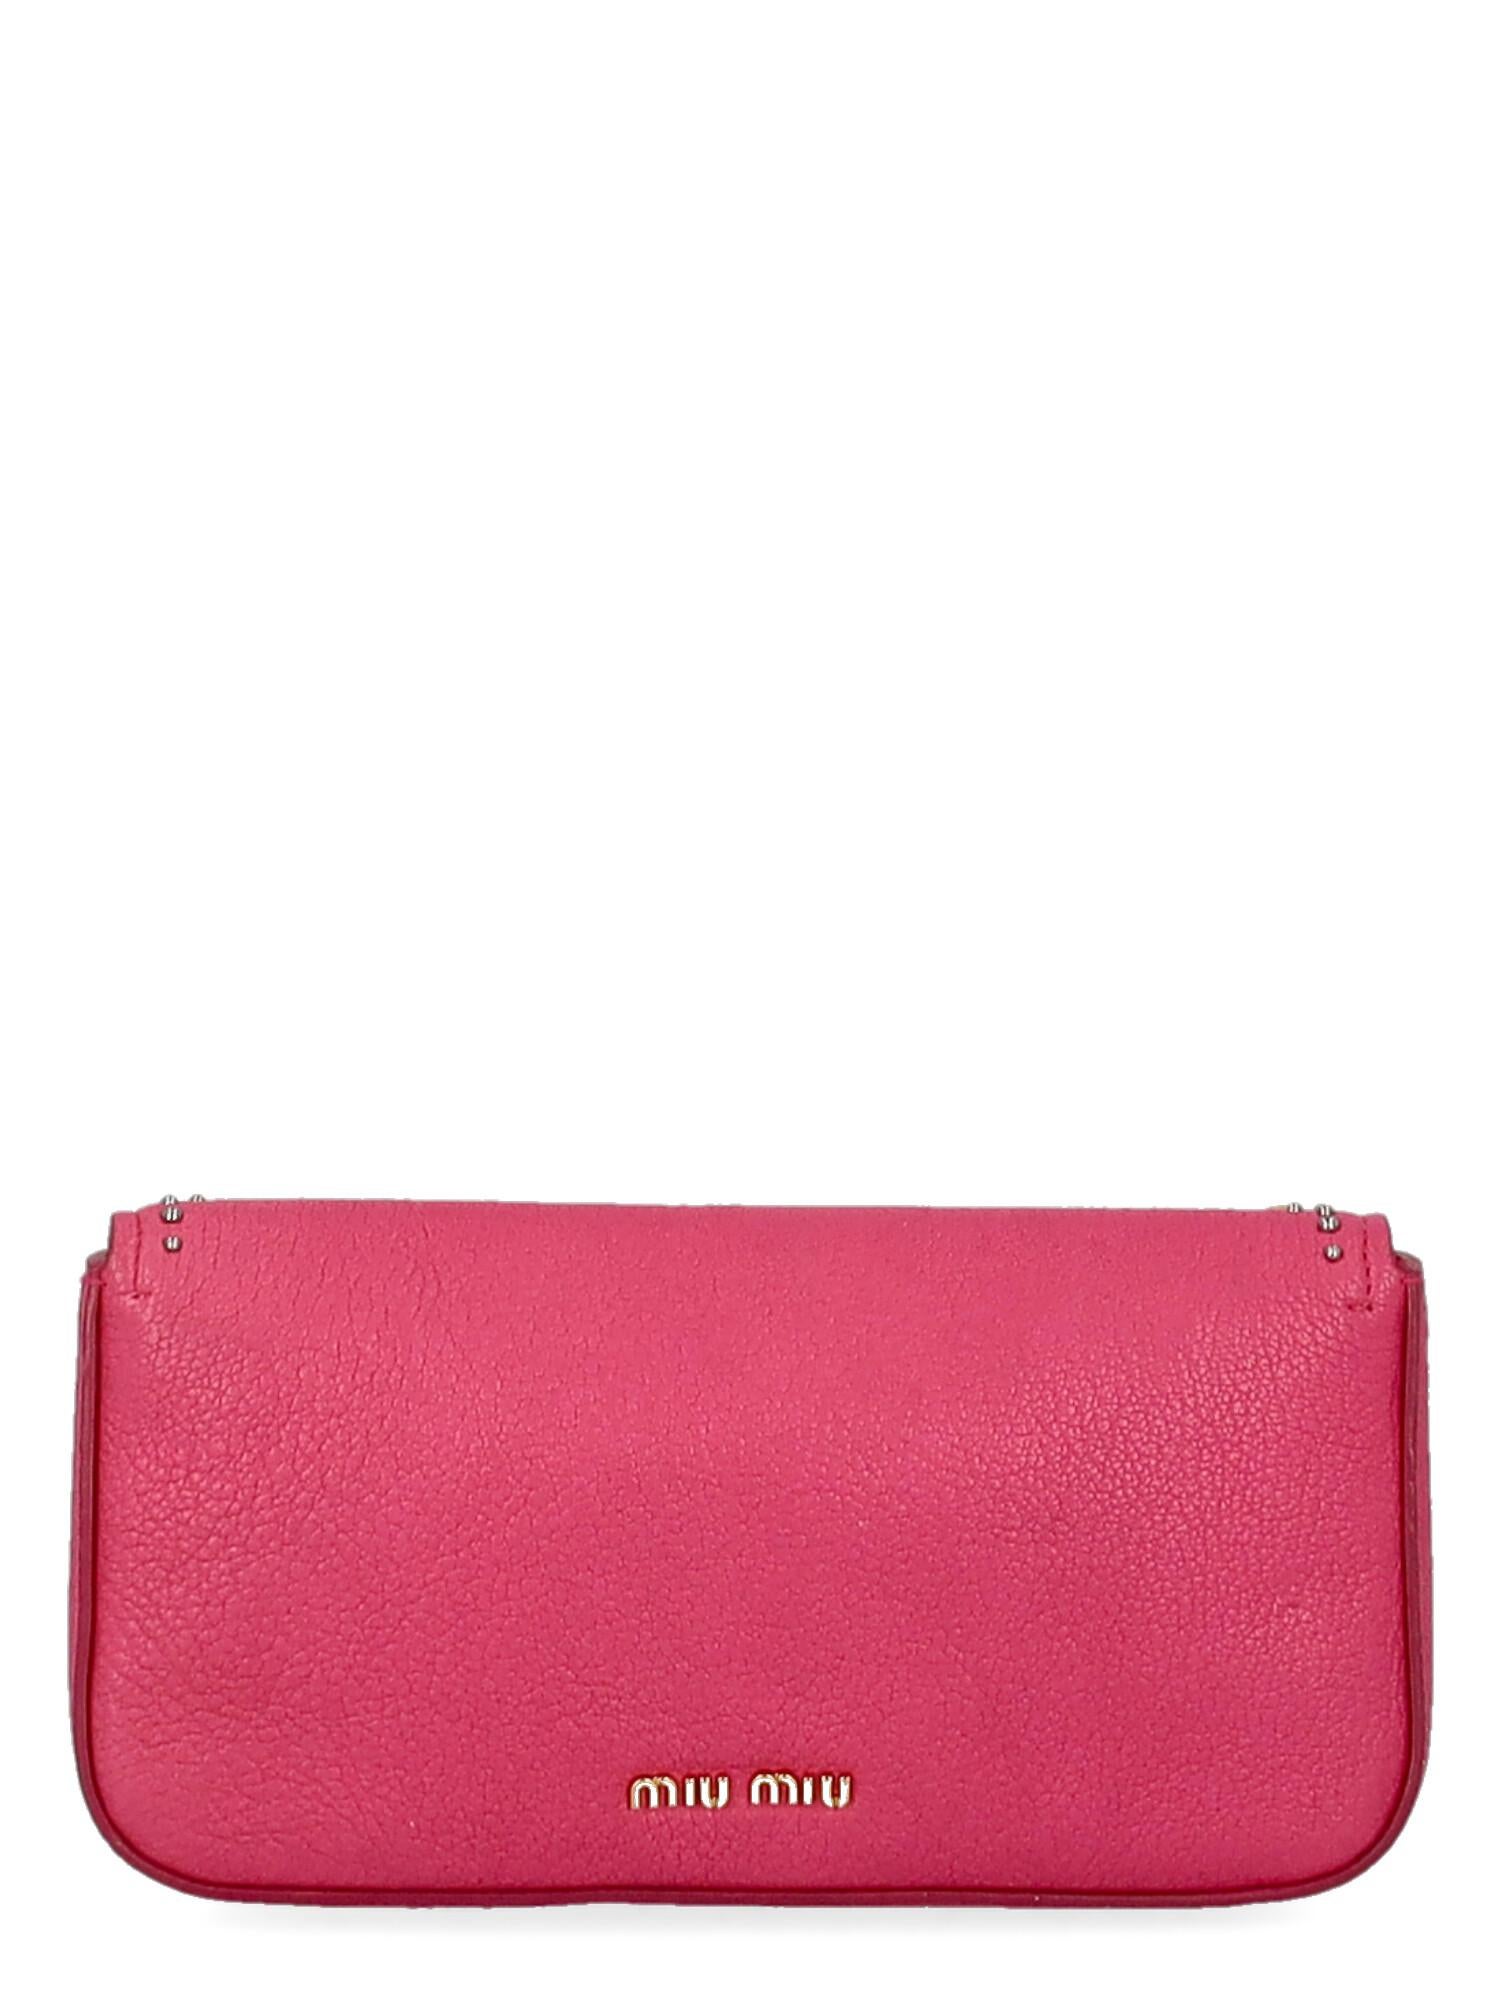 Women's Miu Miu Women Handbags Pink Leather  For Sale